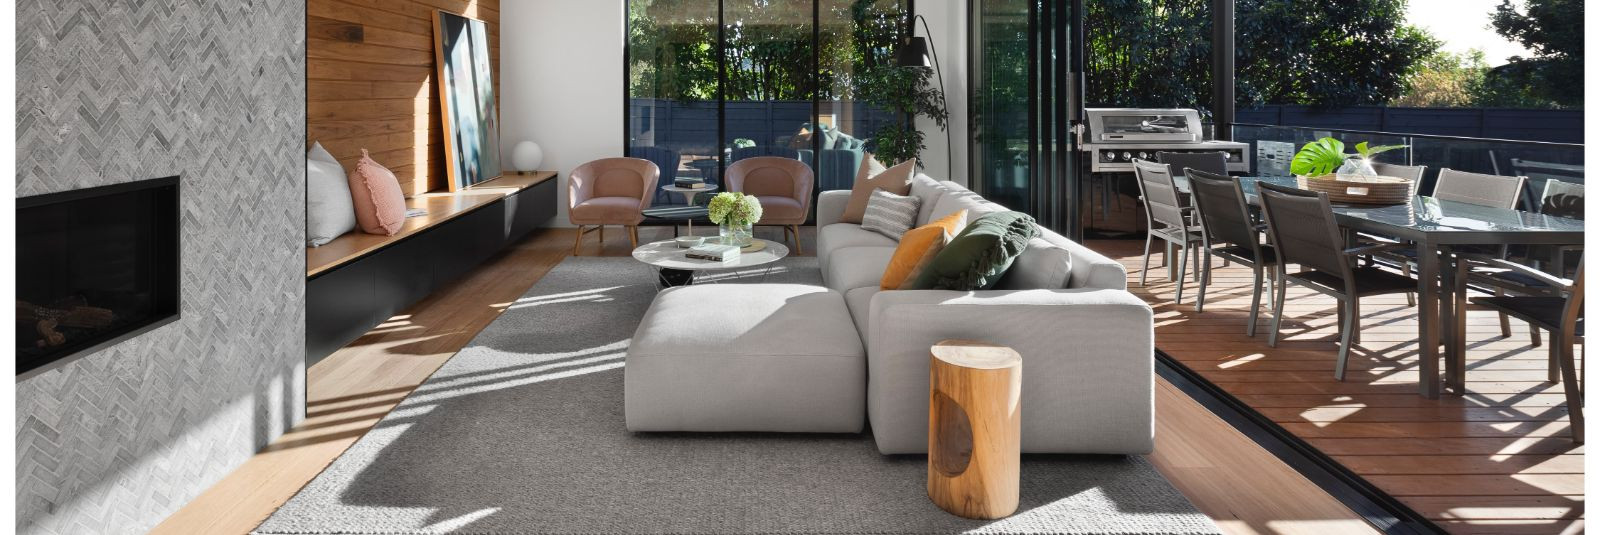  Kodune sisustus ja mööbel võivad teie kodus luua soojuse ja hubasuse ning isikupärastada ruumi. Kuid kui soovite oma kodu veelgi kaasaegsemaks ja stiilsemaks m